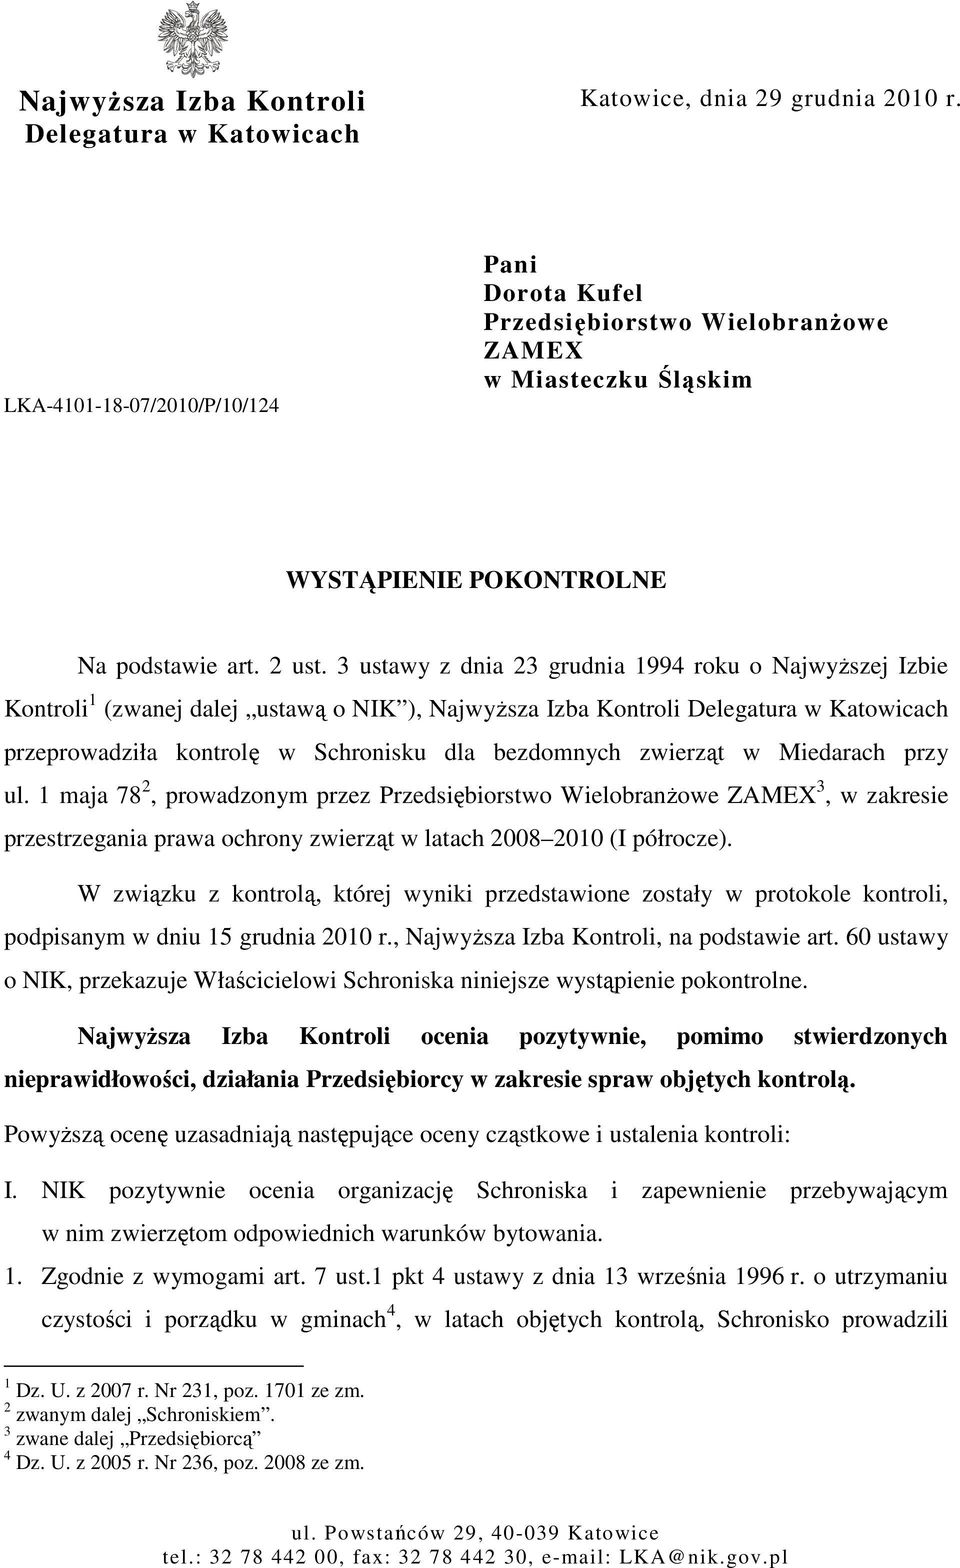 3 ustawy z dnia 23 grudnia 1994 roku o NajwyŜszej Izbie Kontroli 1 (zwanej dalej ustawą o NIK ), NajwyŜsza Izba Kontroli Delegatura w Katowicach przeprowadziła kontrolę w Schronisku dla bezdomnych